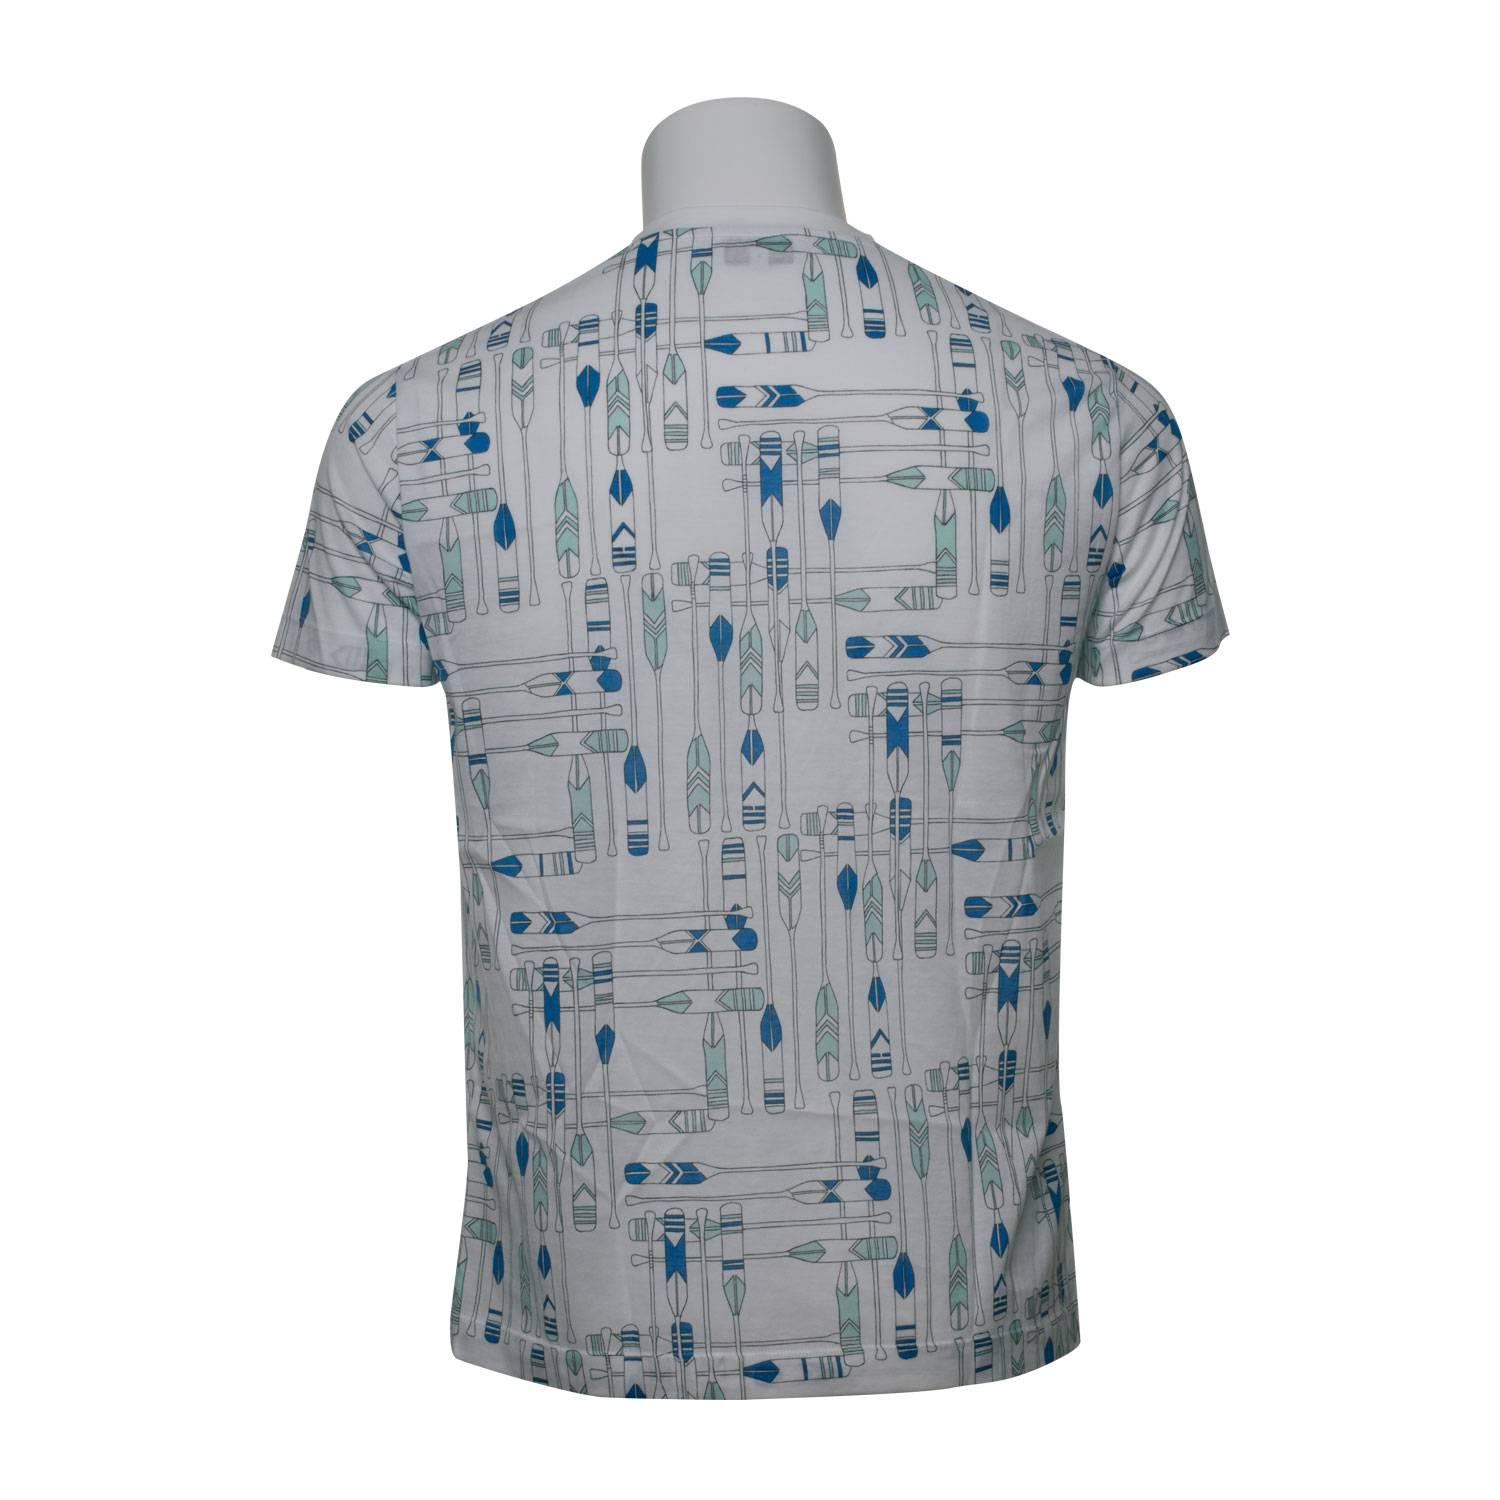 Gray Hemes T-shirt Pagaie Size M Color Bleu Sport 2016. For Sale